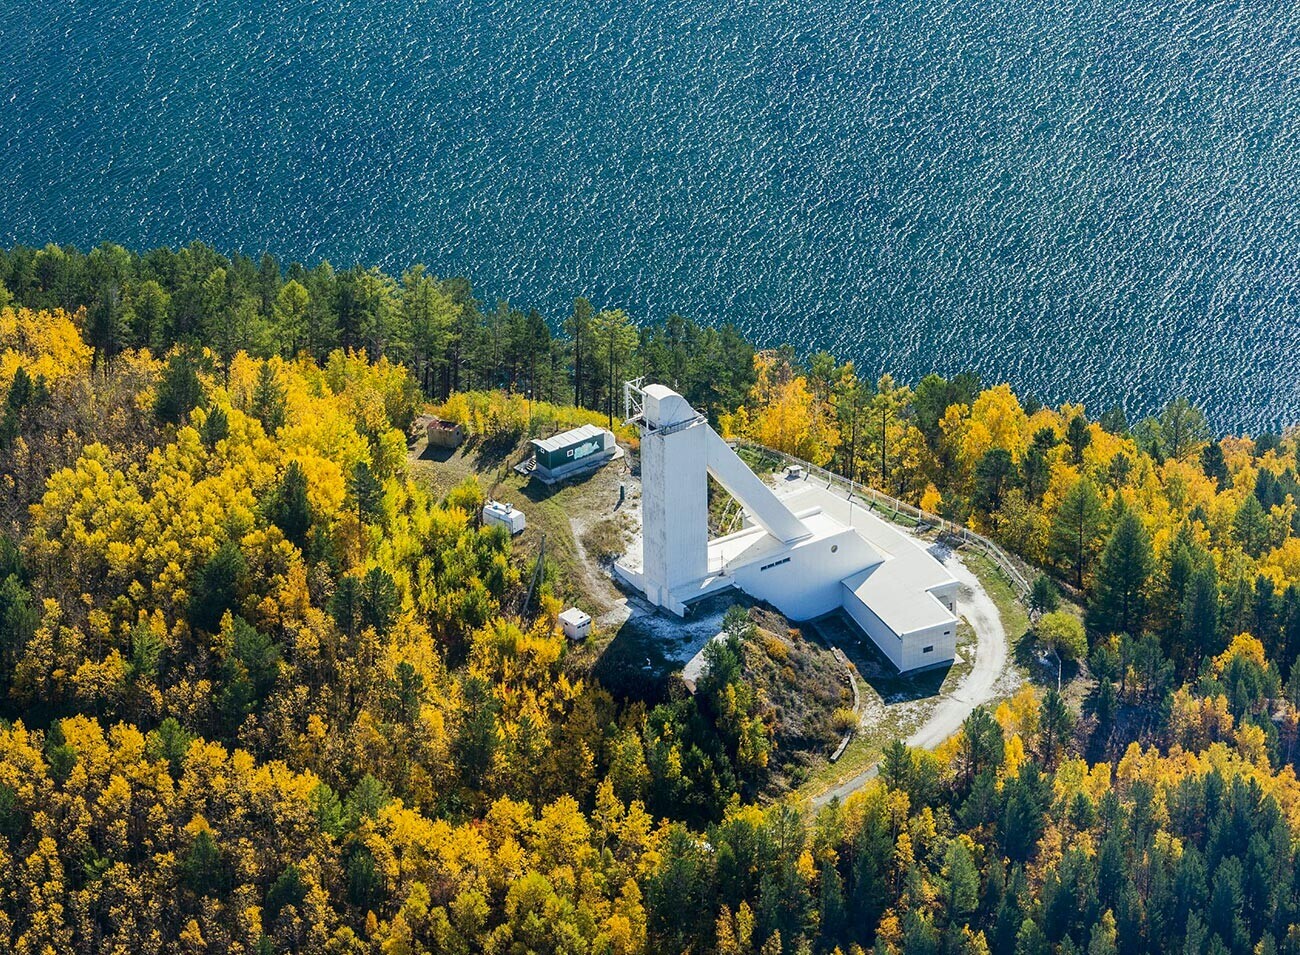 Бајкалската астрофизичка опсерваторија на периферијата на селото Листвјанка на јужниот брег на Бајкалското езеро.

